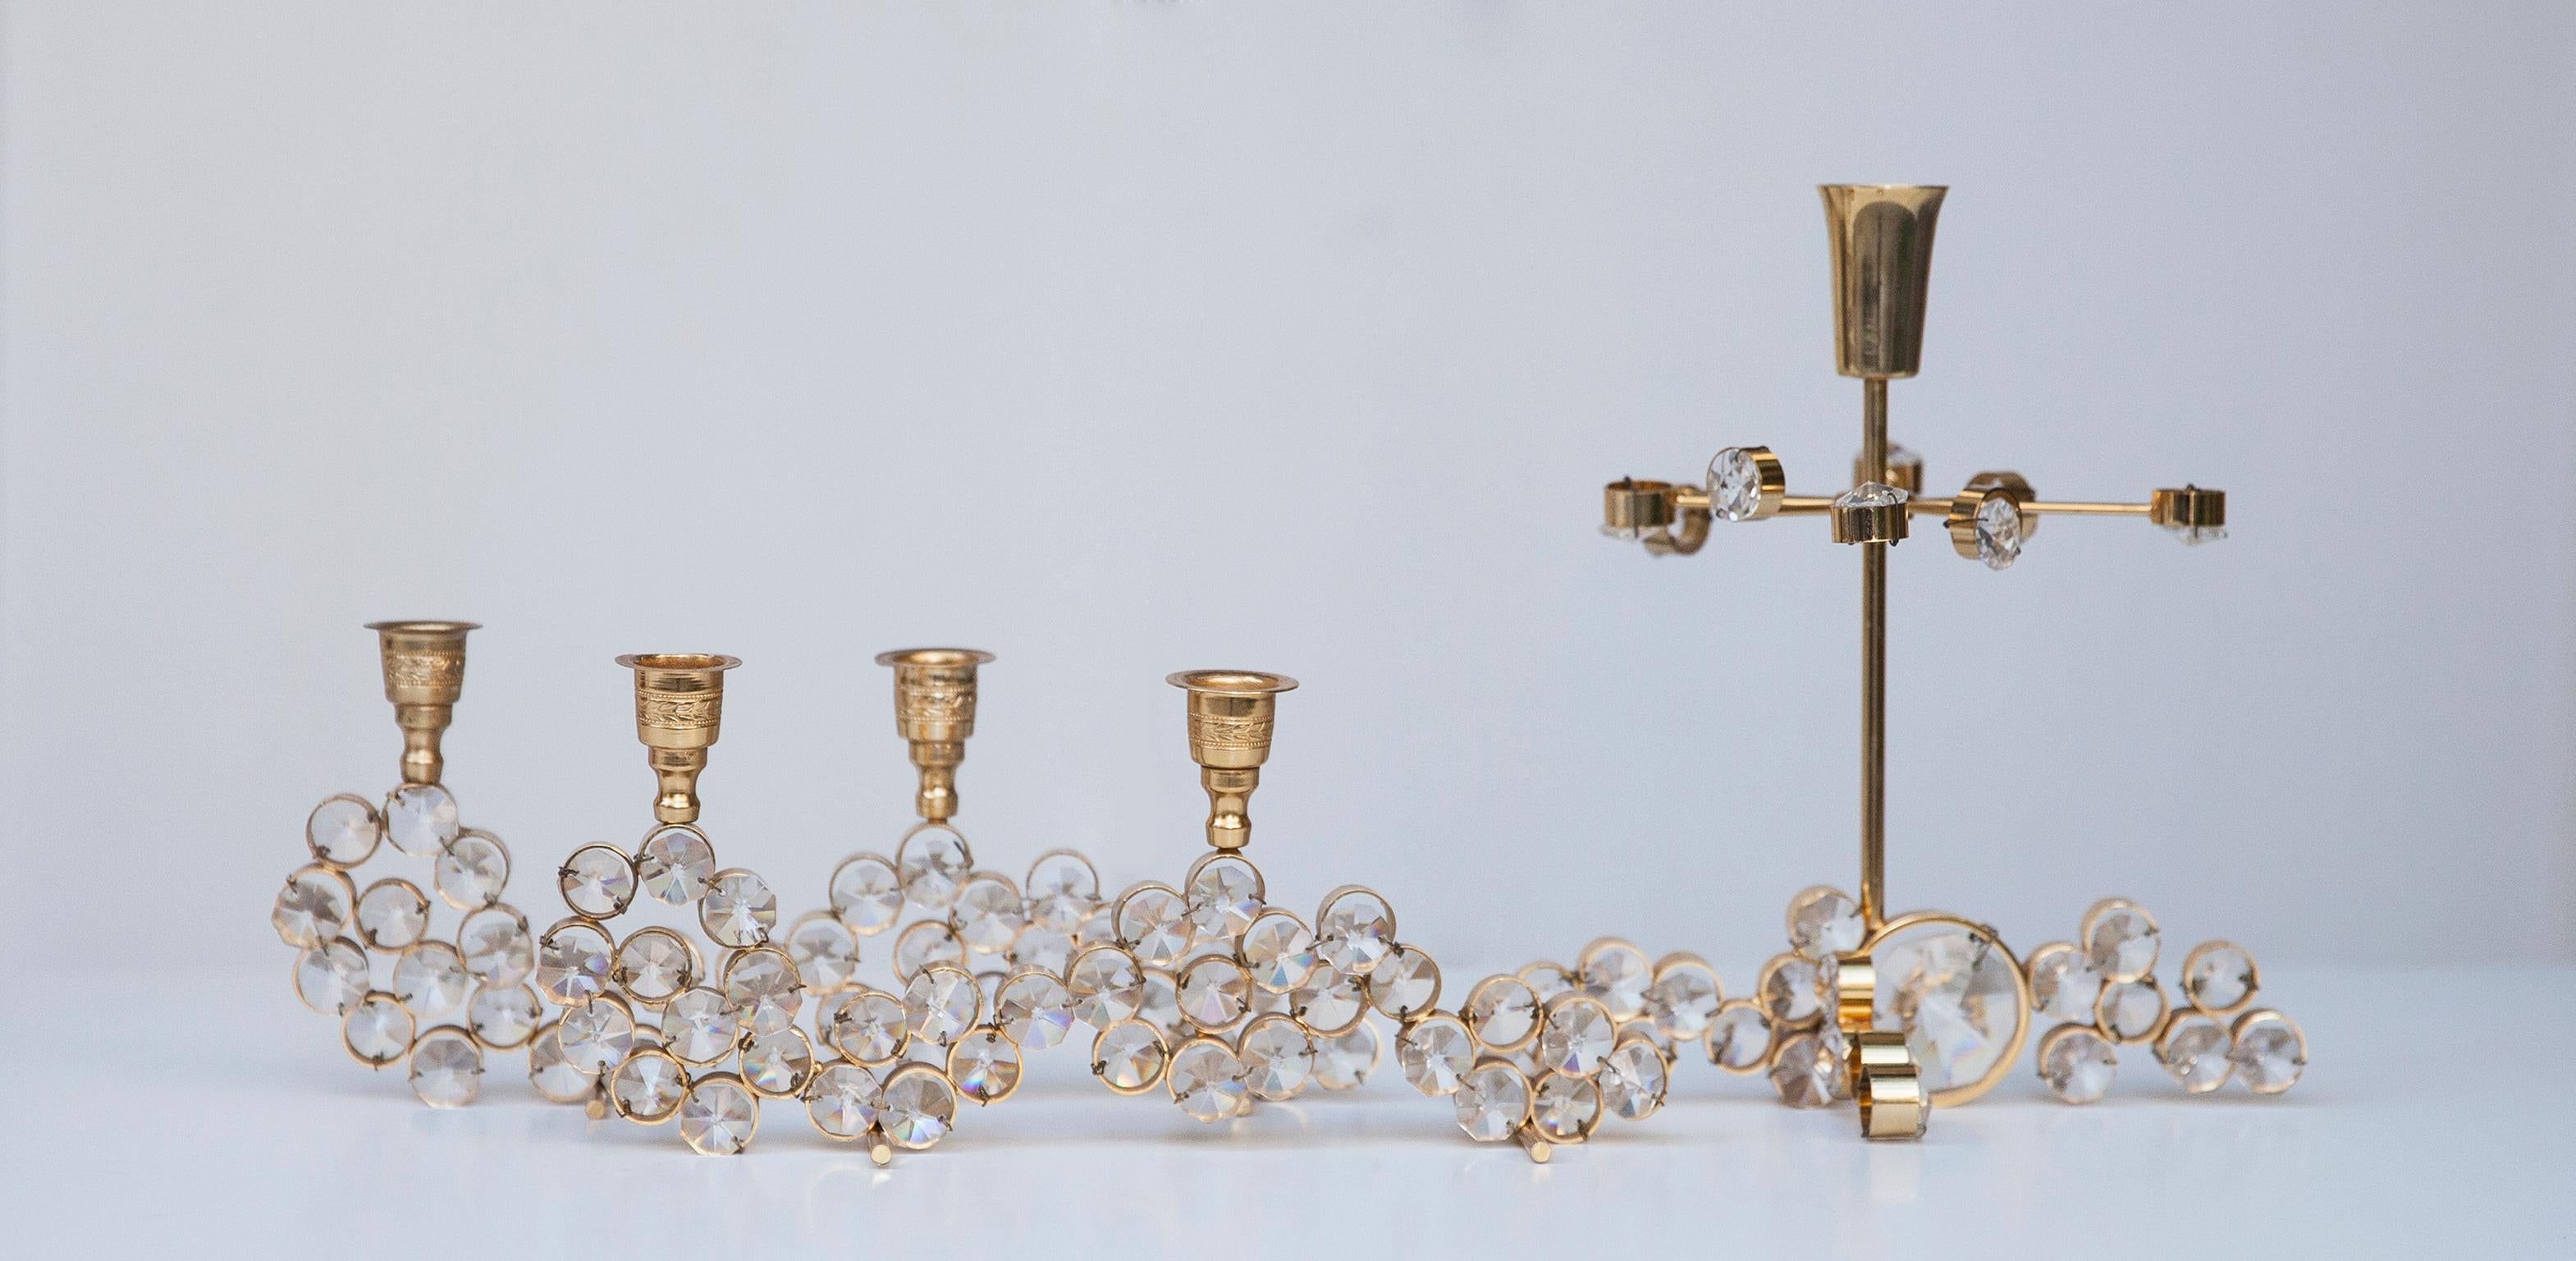 Cinq magnifiques chandeliers dans le style Hollywood Regency, fabriqués dans les années 1970 par Palwa Germany. En laiton plaqué or avec cristaux facettés en excellent état vintage.

Mesures : 23 H x 9 B x 5 D cm

19 H x 18 B x 12 D cm

12 H x